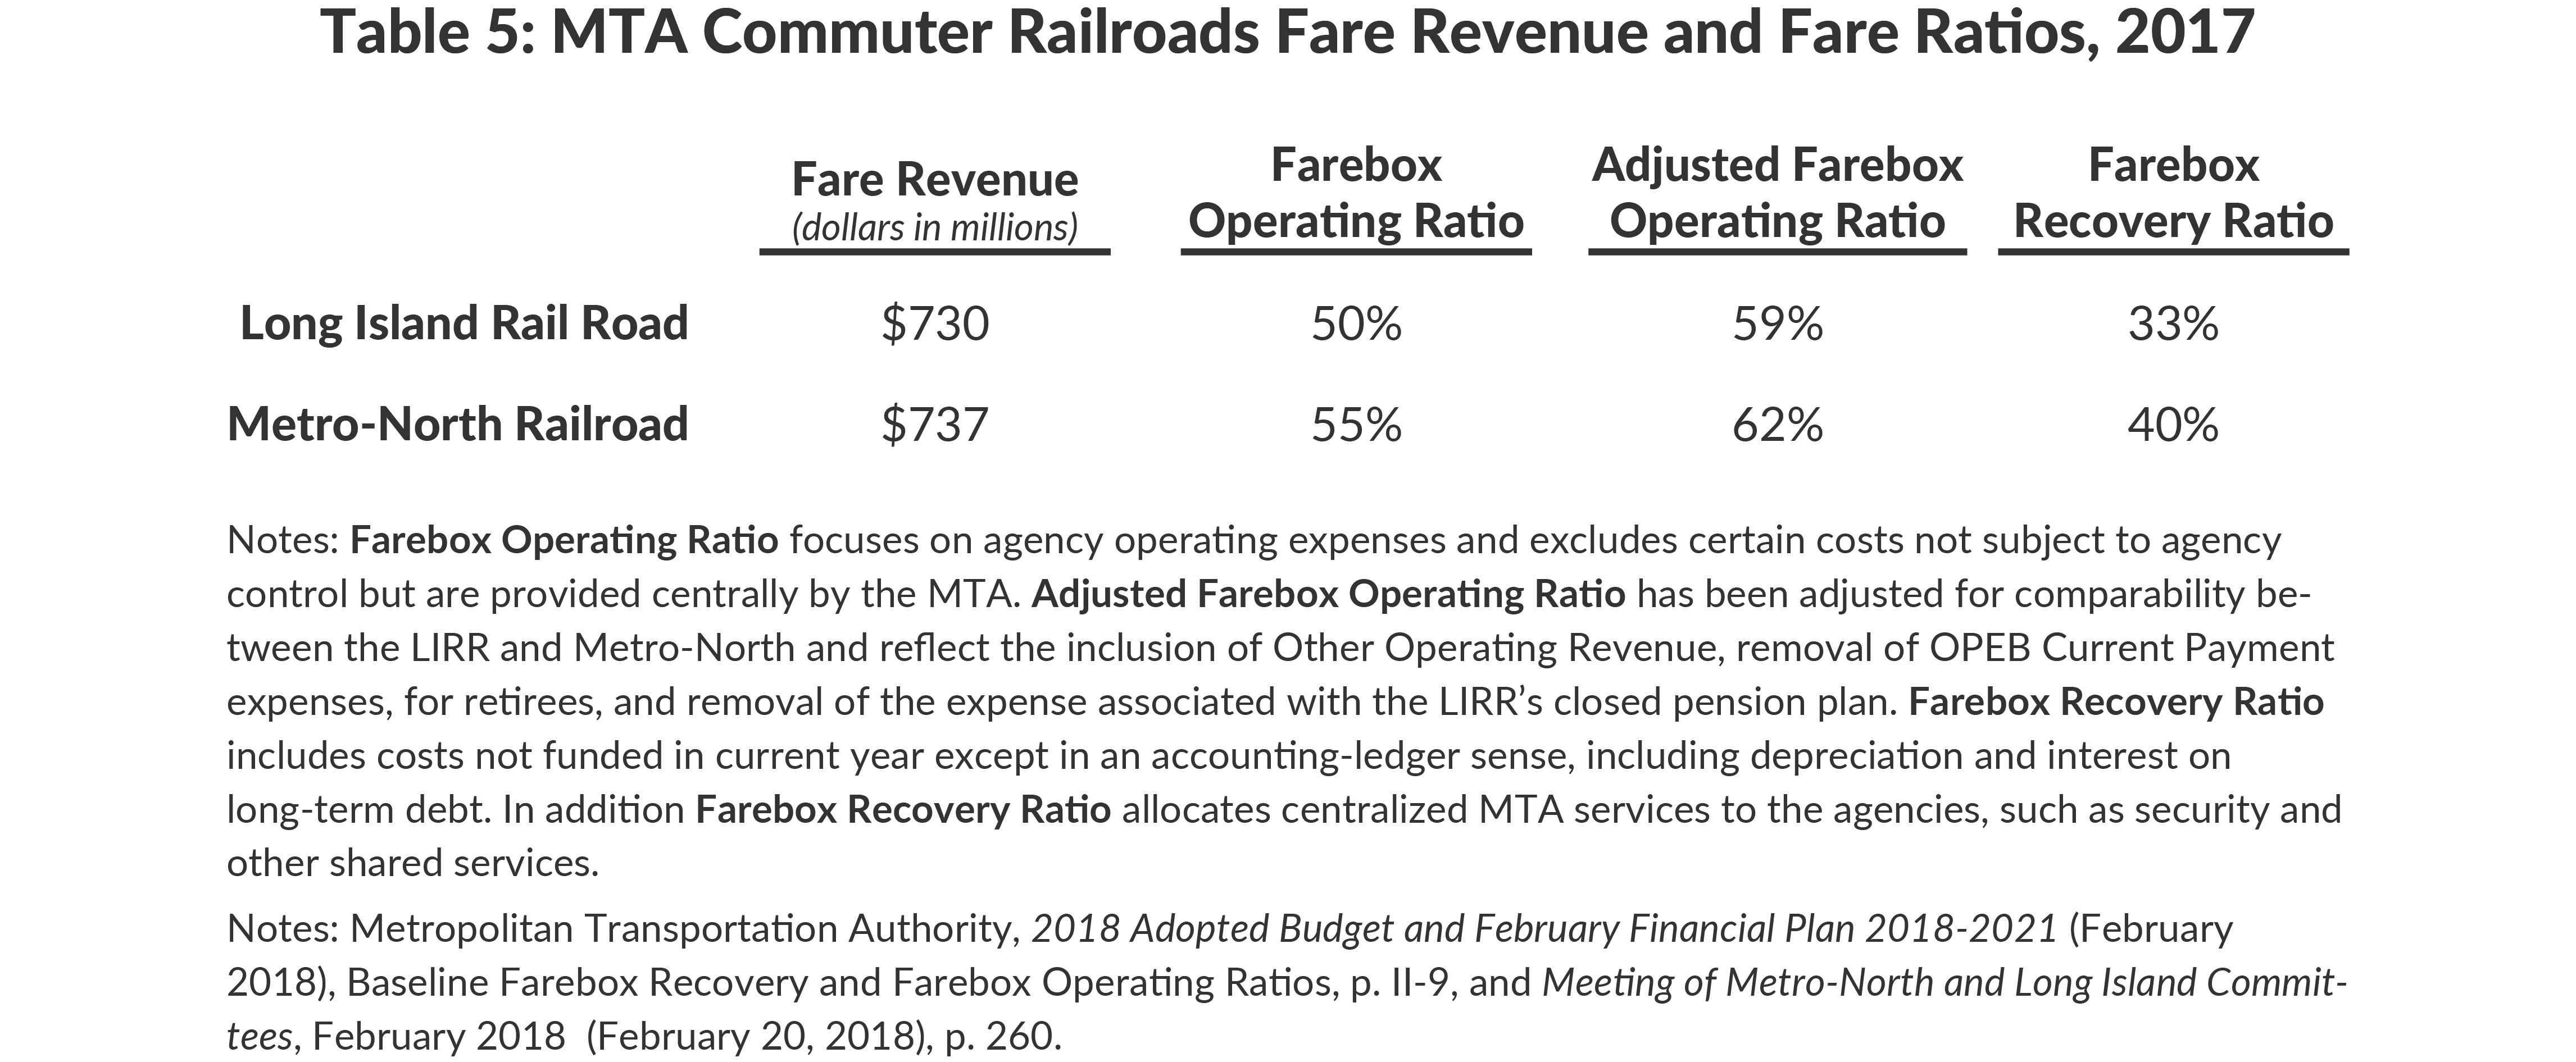 Table 5: MTA Commuter Railroads Fare Revenue and Fare Ratios, 2017